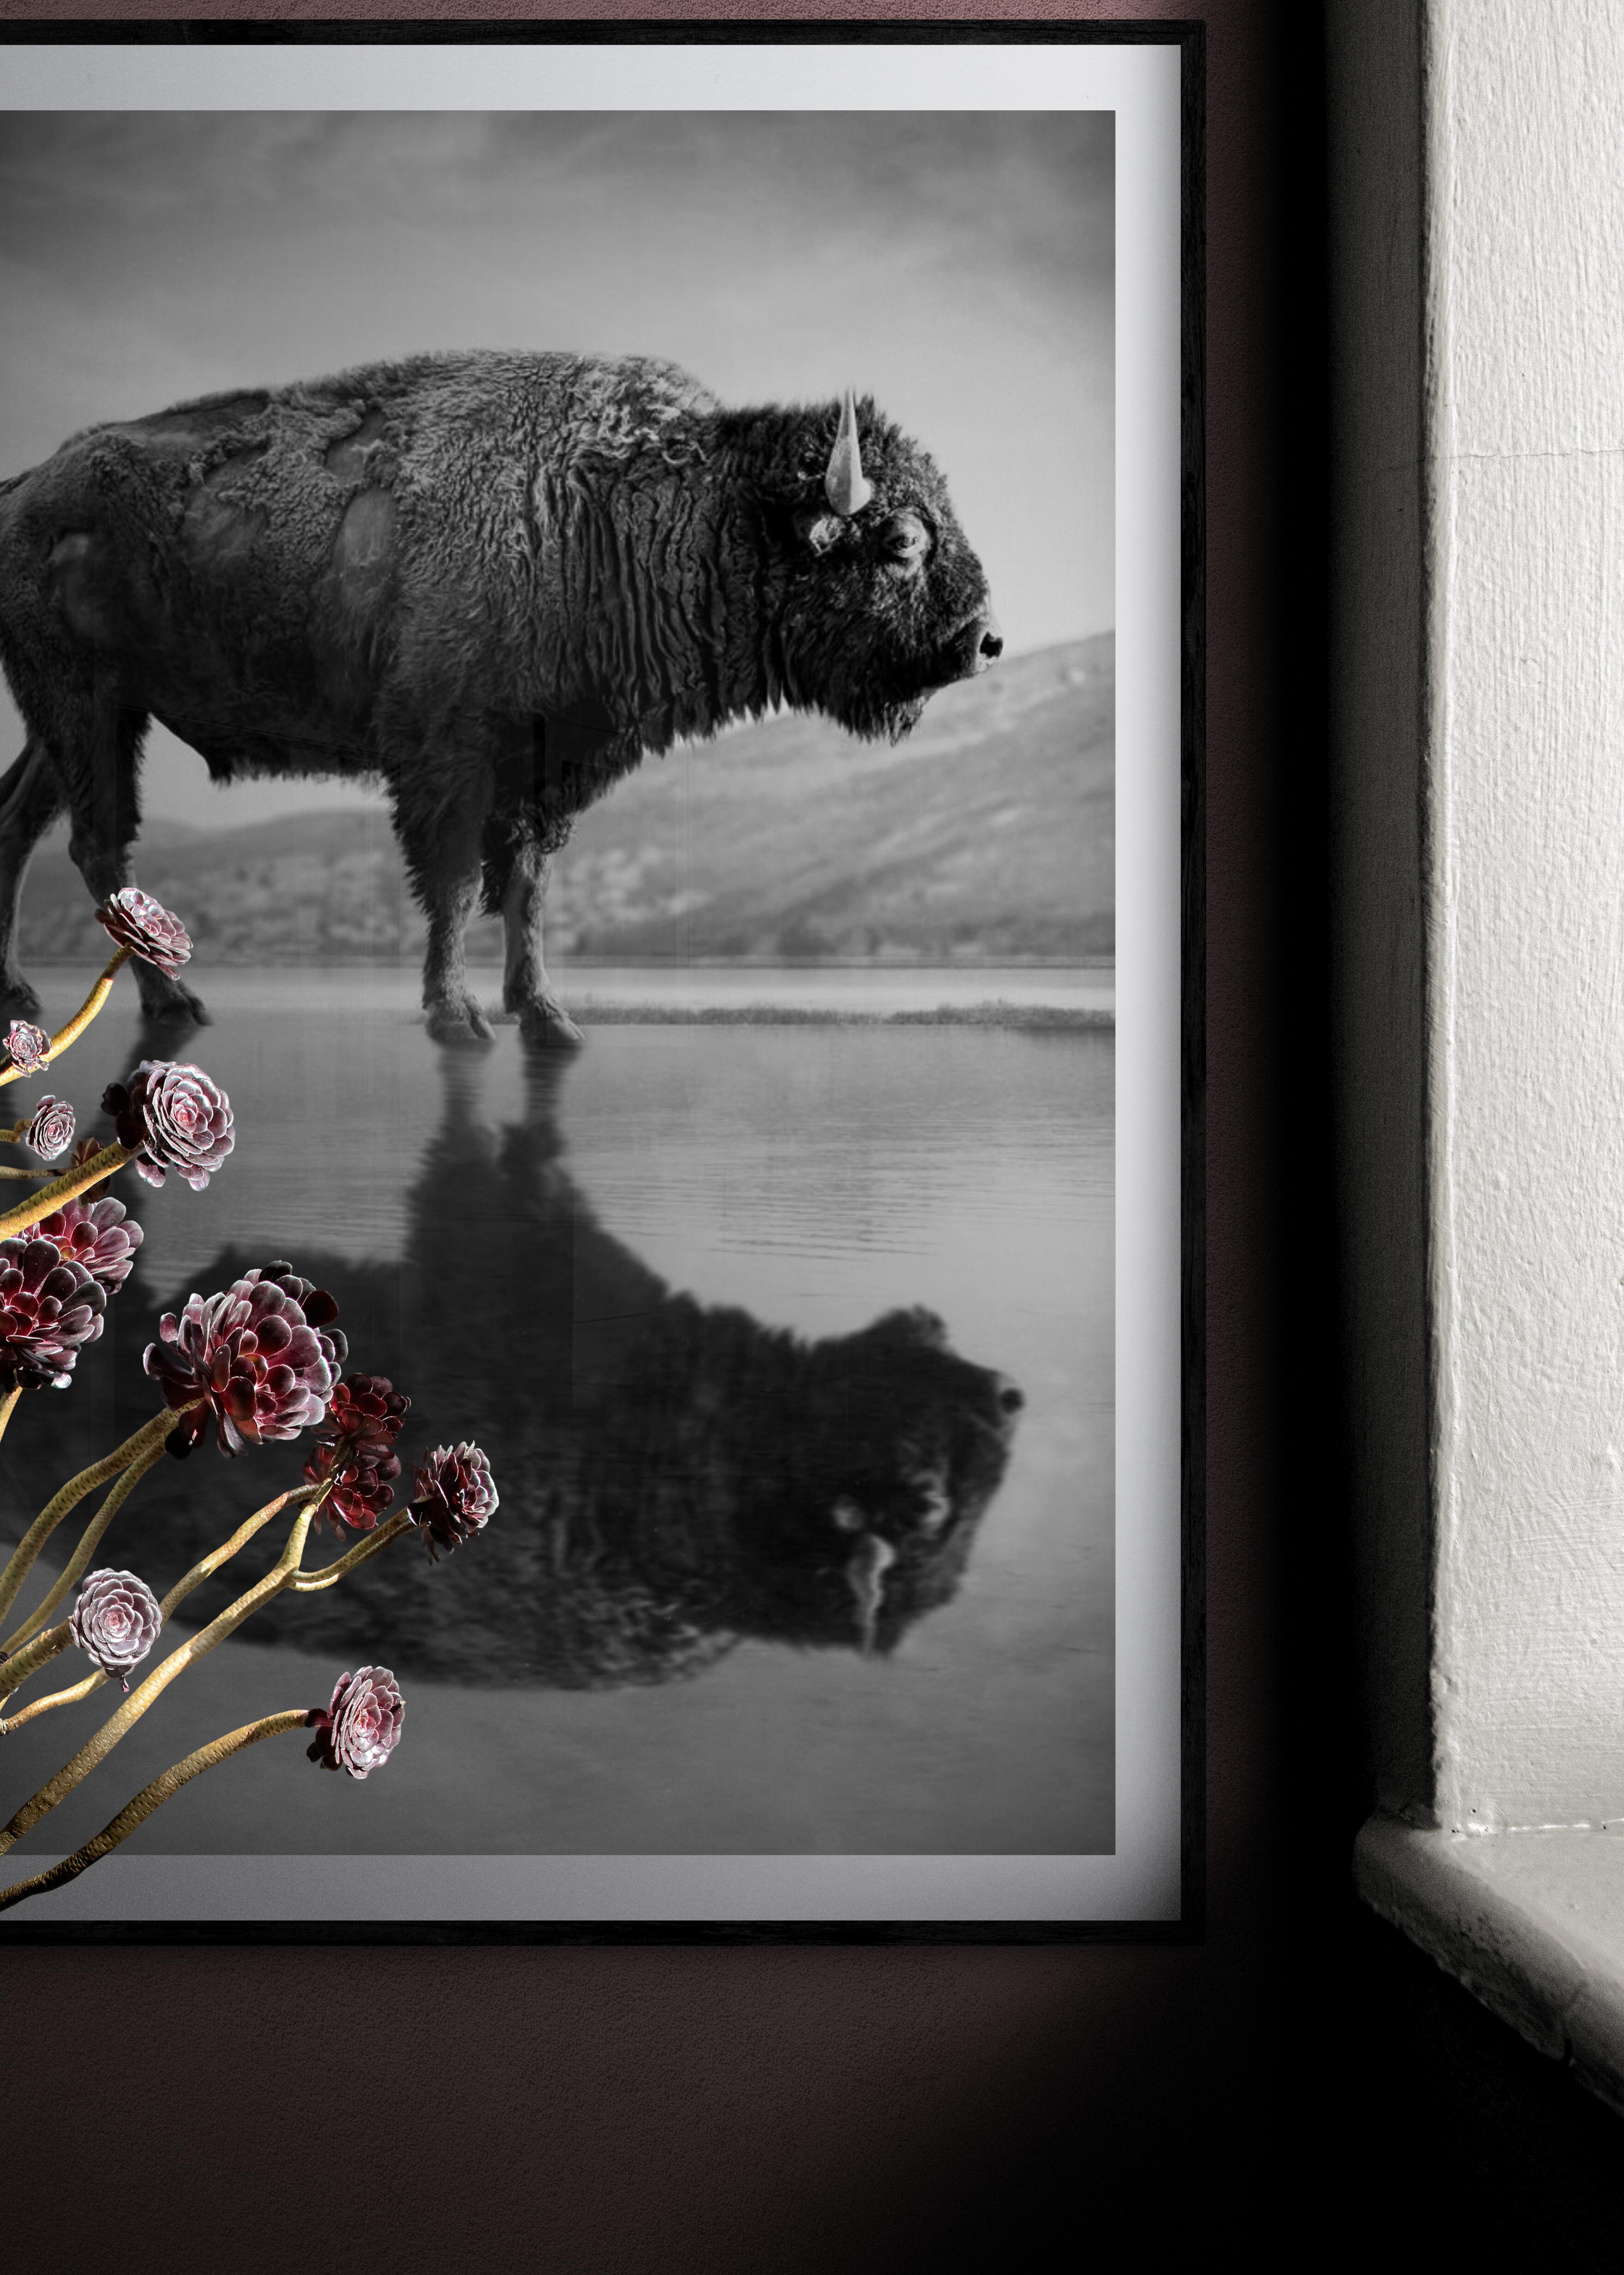 Il s'agit d'une photographie contemporaine d'un bison américain. 
Imprimé sur du papier d'archives et avec des encres d'archives.
Encadrement disponible. Renseignez-vous sur les tarifs. 

Ce tirage est un A/P (Artist Proof) signé sur papier glacé.